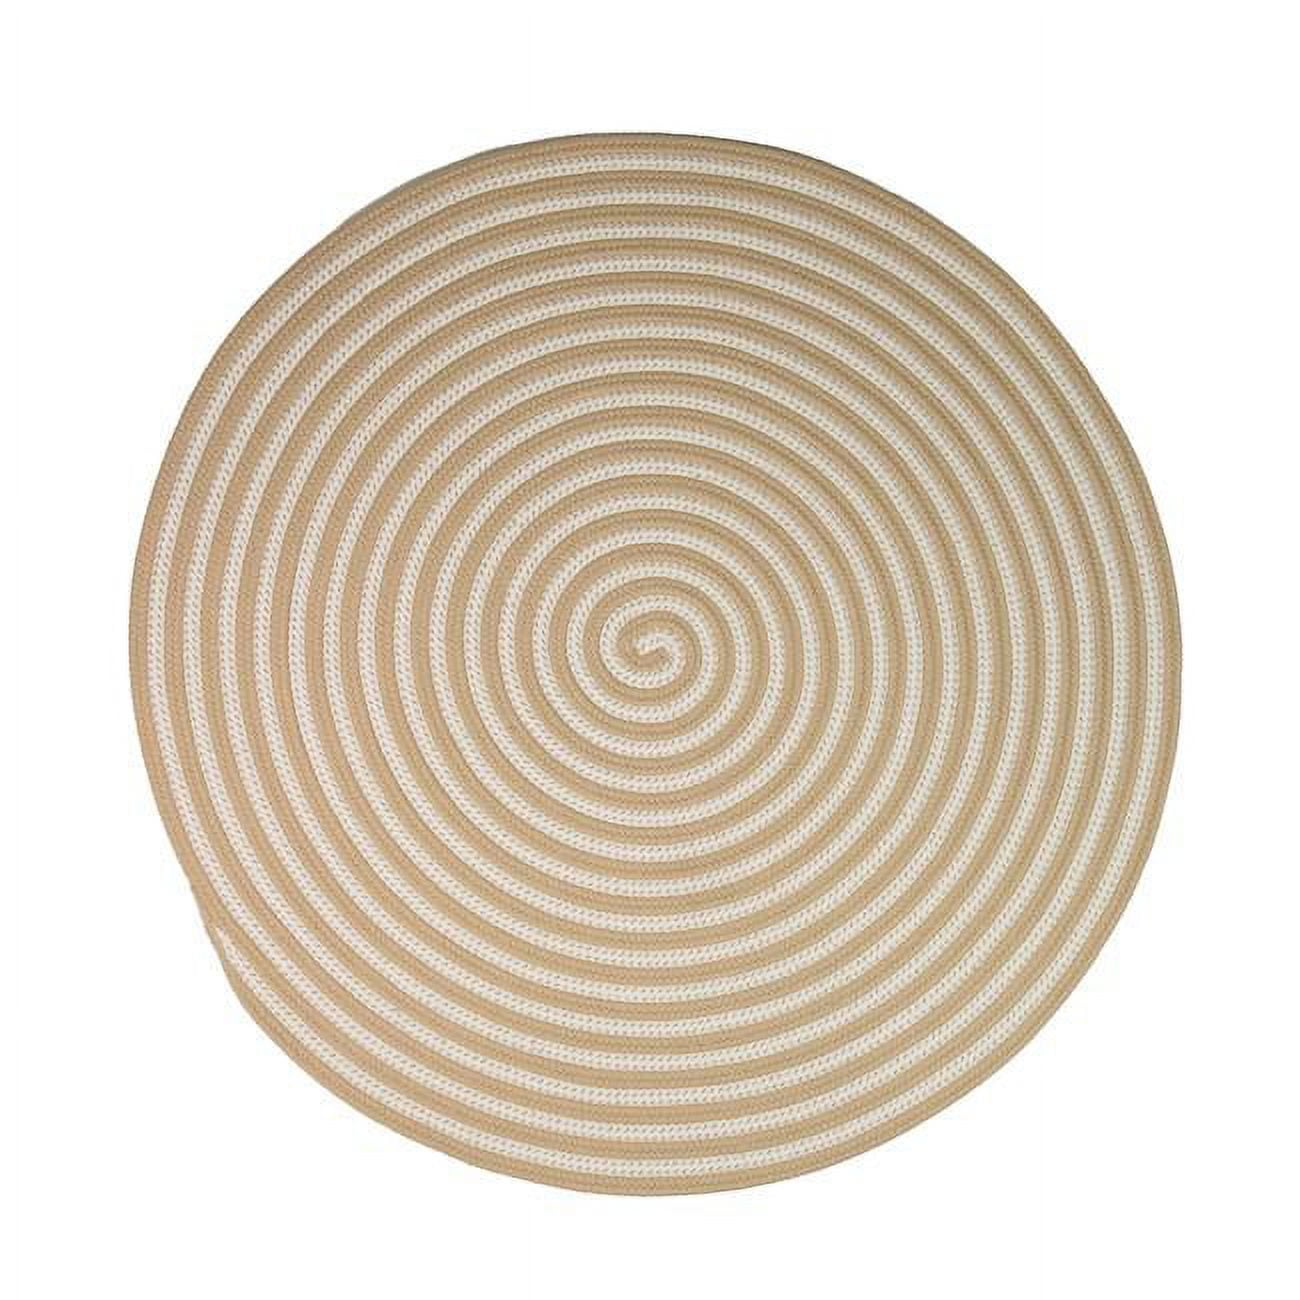 40 x 40 in. Tiki Spiral Doormats, Sandstorm -  Designs-Done-Right, DE2838968